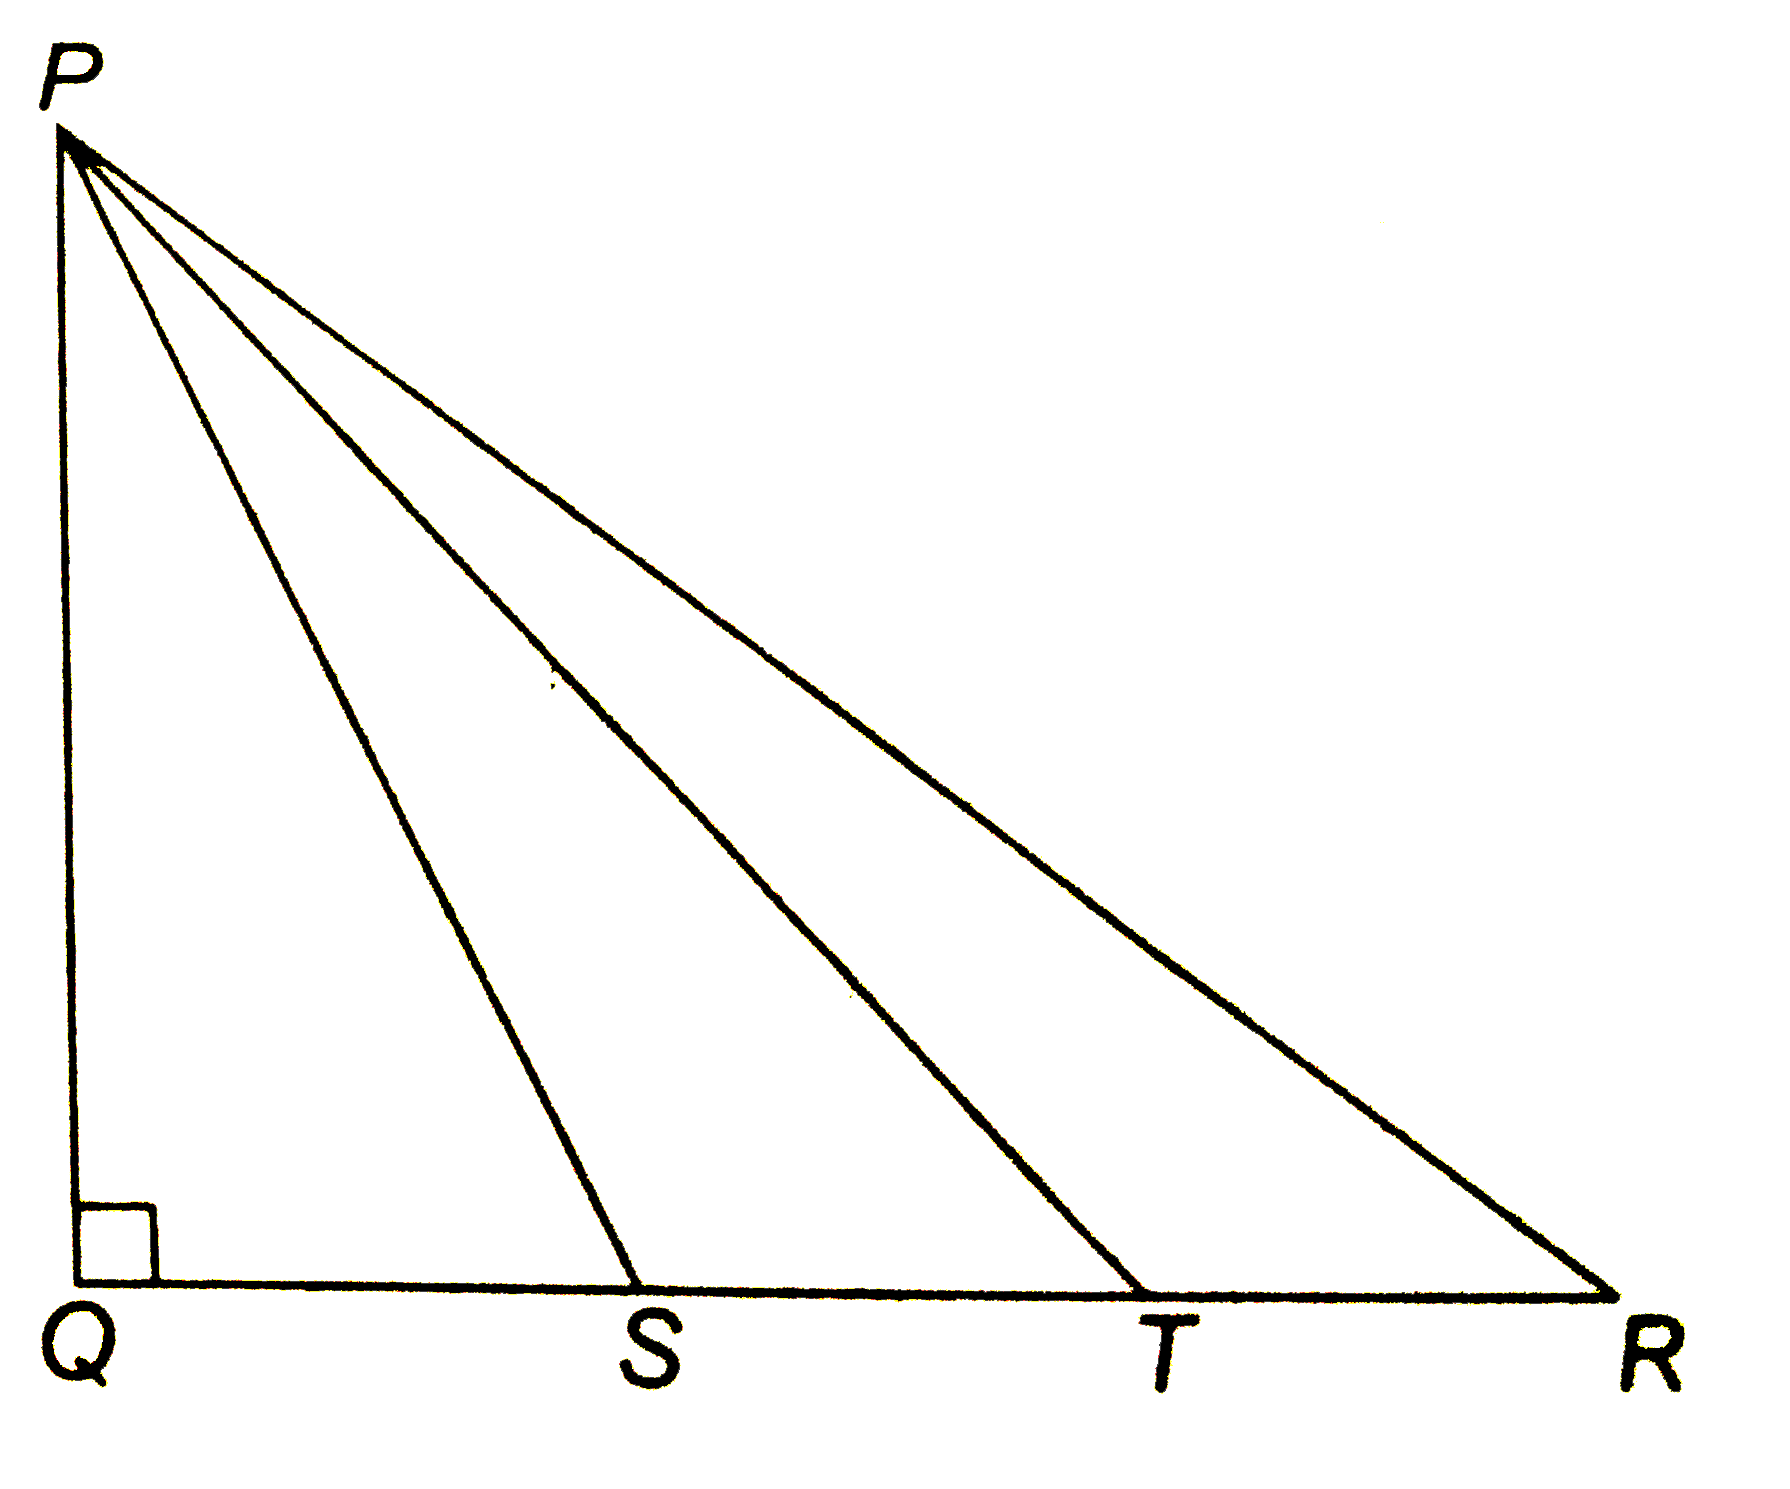 दिए चित्र में DeltaPQR  में angleQ  समकोण है तथा S  और T , QR  को समत्रिभाजित करते है सिद्ध कीजिये कि 8PT^2=3PR^2+5.PS^2